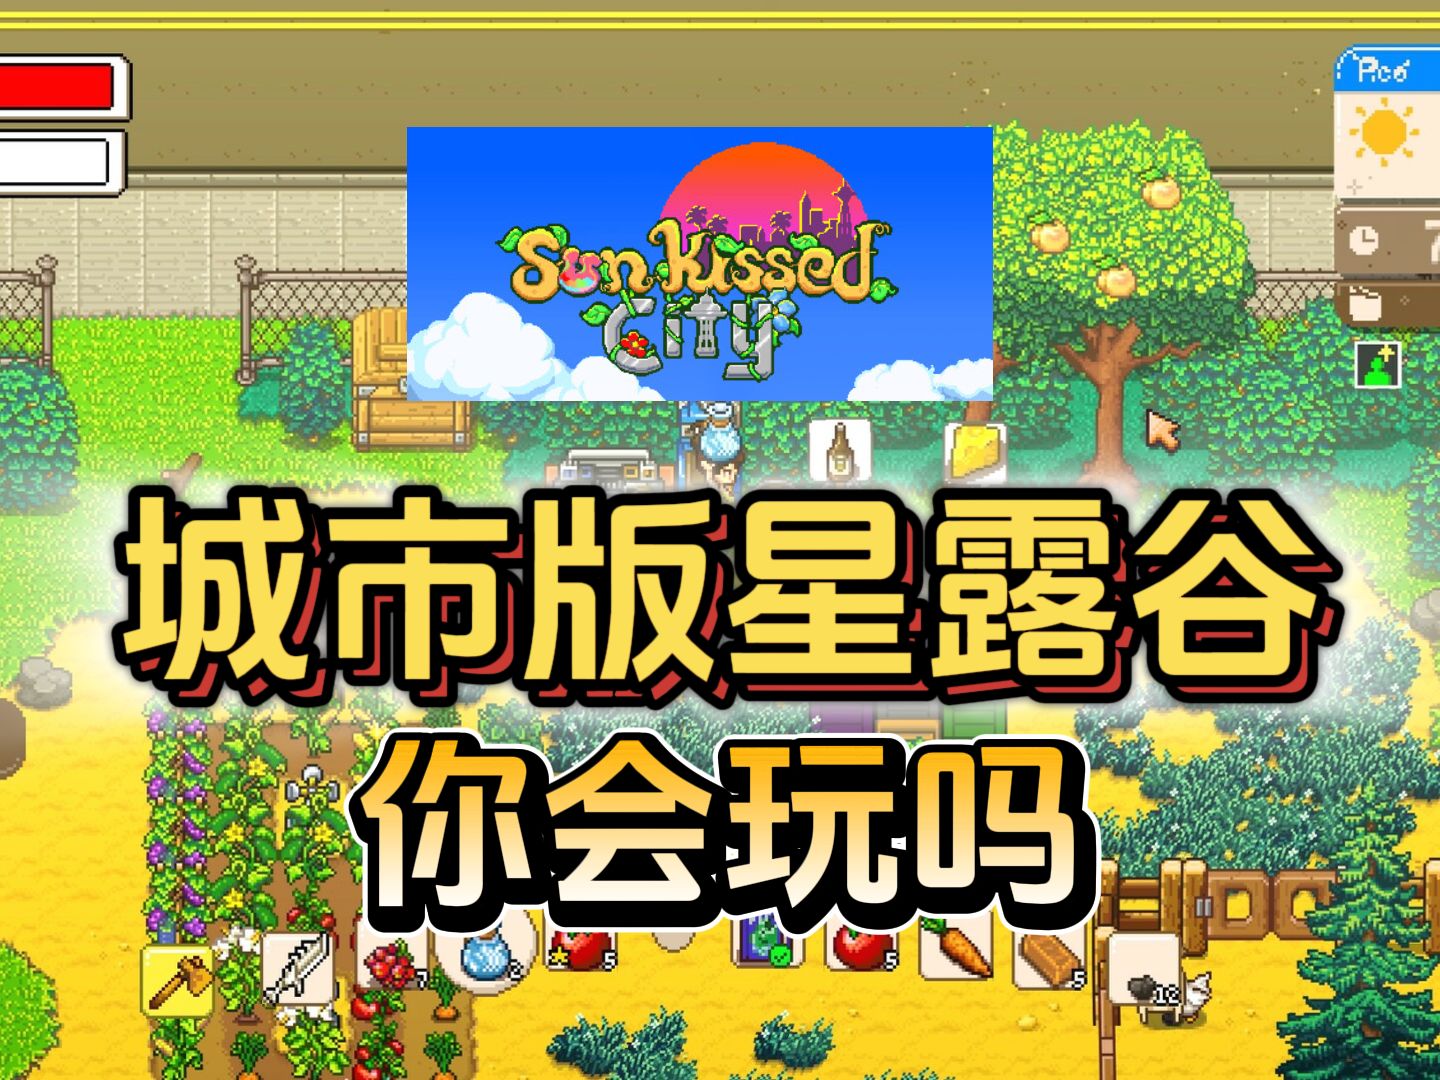 星露谷前开发者新游《Sunkissed City》上架Steam平台 背景为城市 你会玩吗？